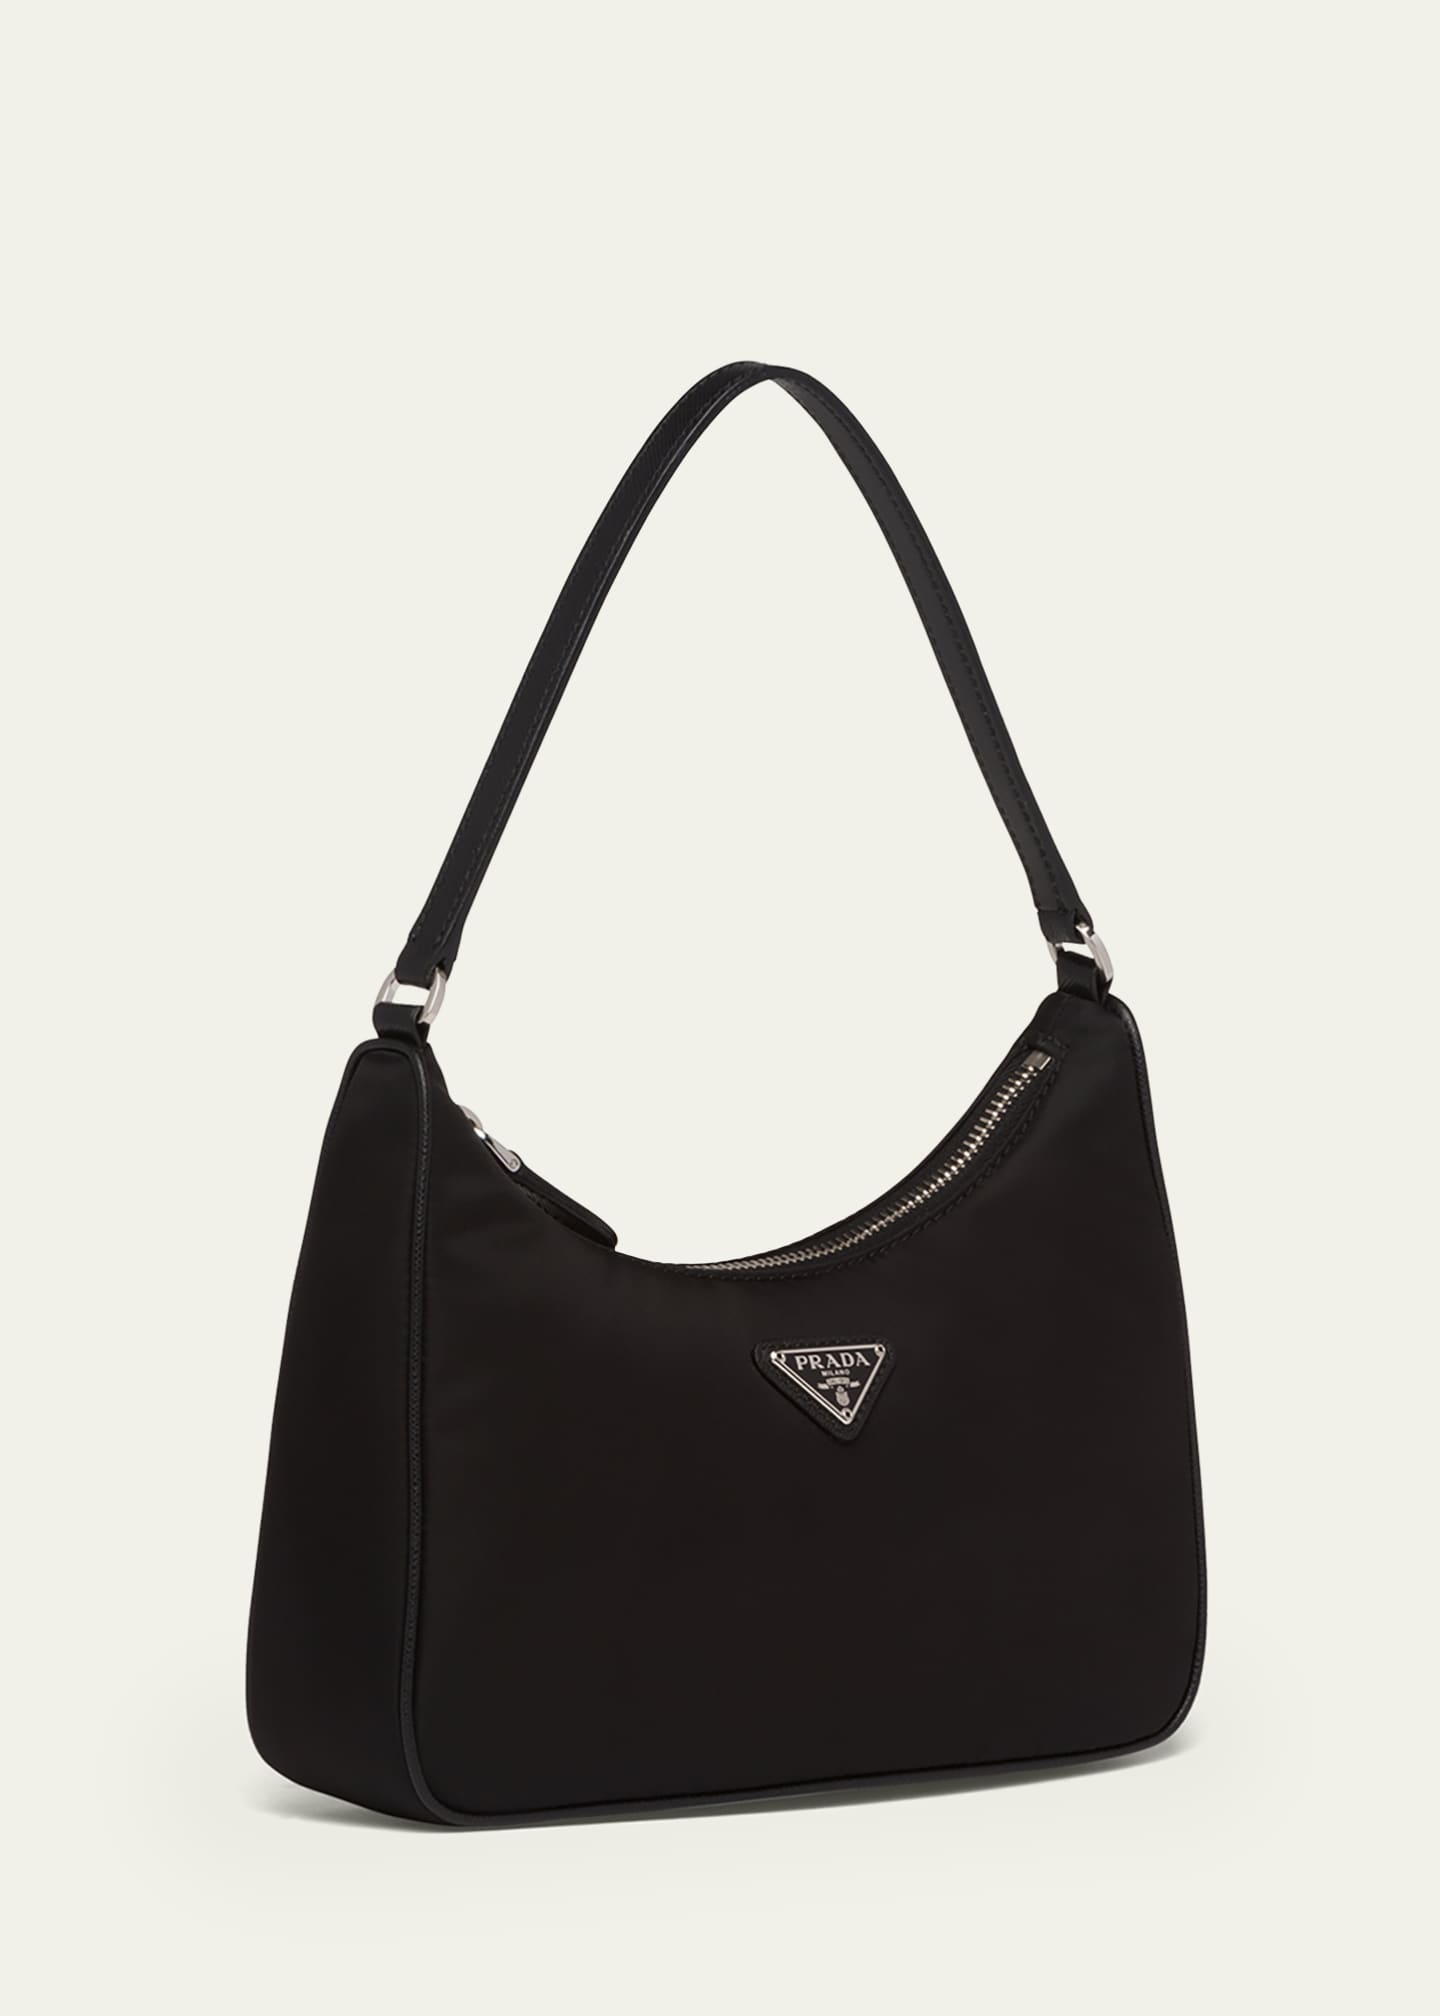 Prada Re-Edition 2005 Shoulder Bag Nylon Black in Nylon/Saffiano Leather  with Silver-tone - US